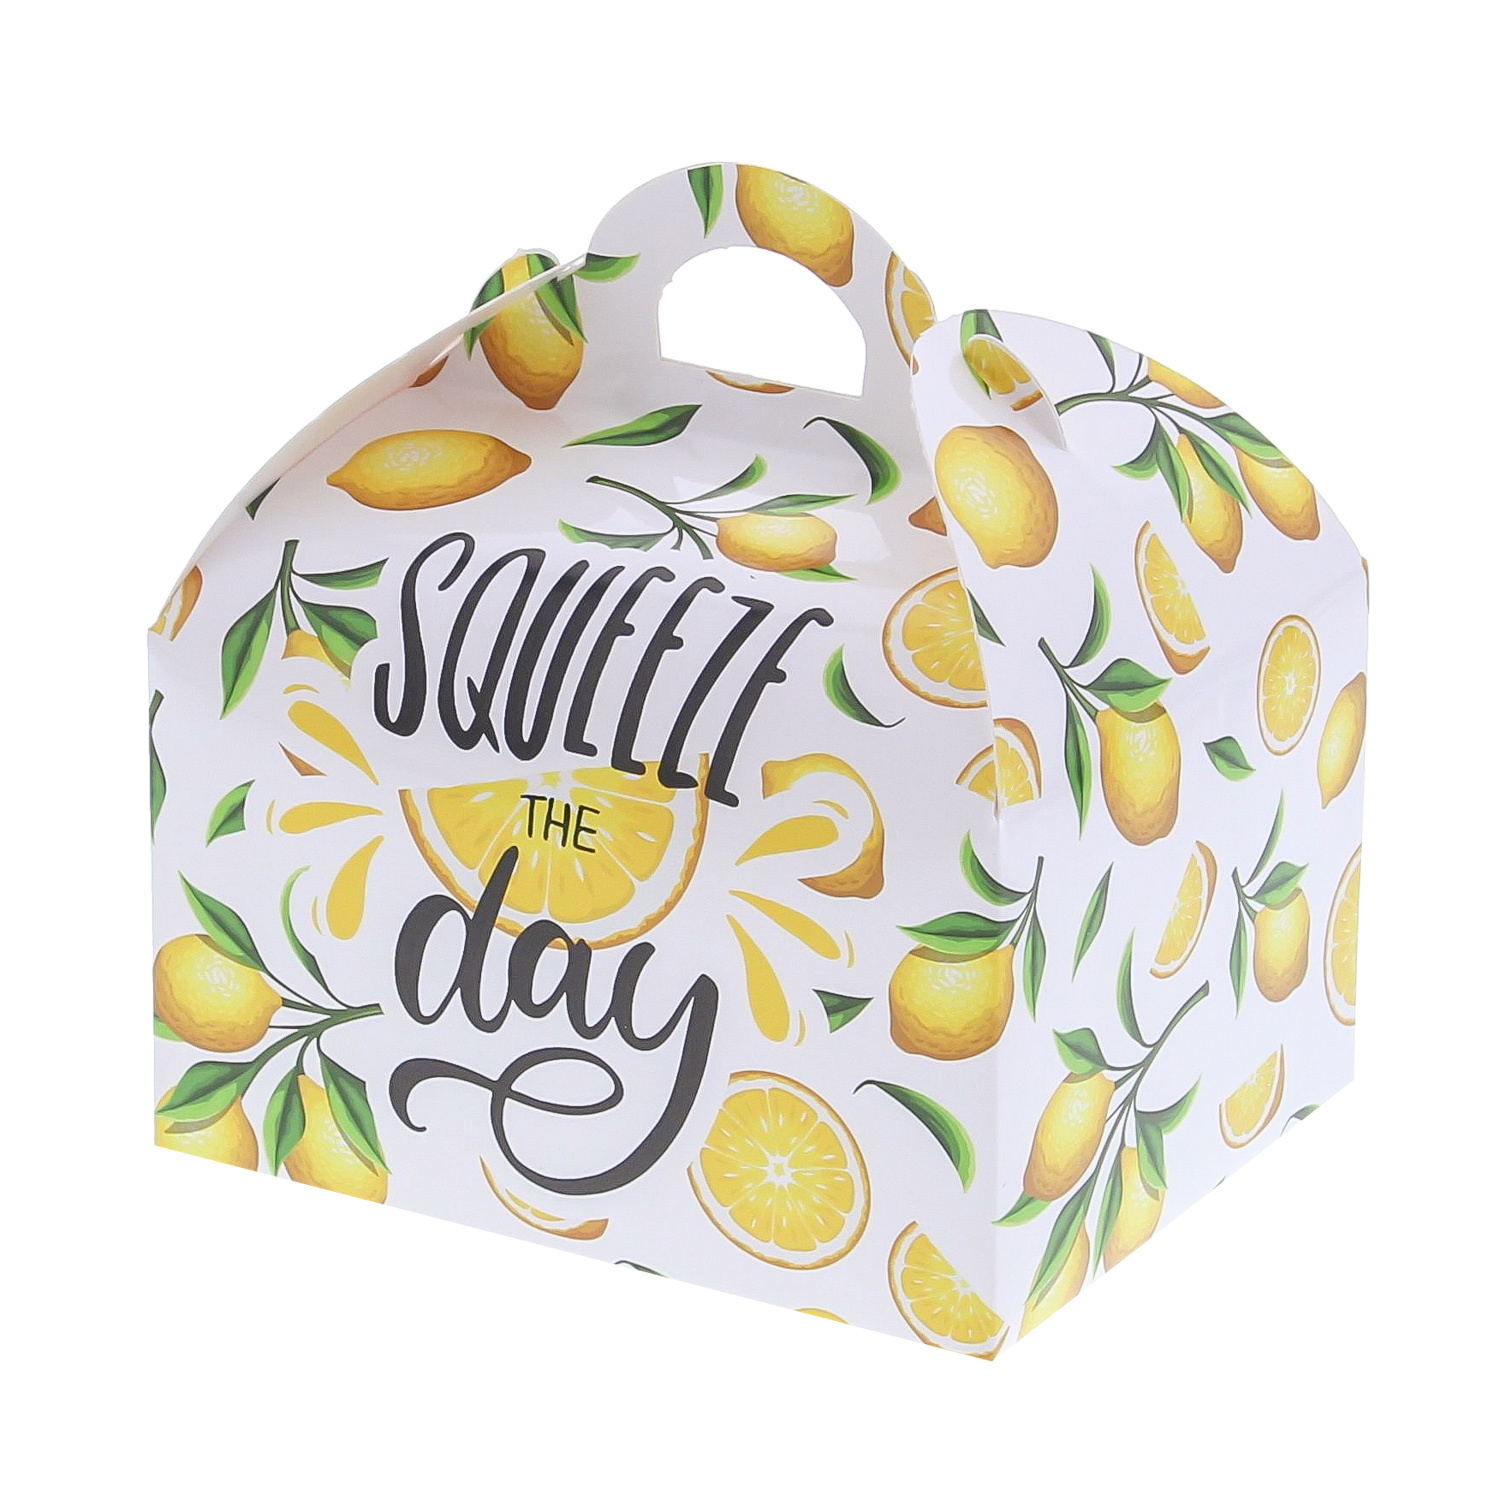 Sweetbox met handvat 500 gr. "Lemons" squeeze the day - 120*96*130 mm - 48 stuks